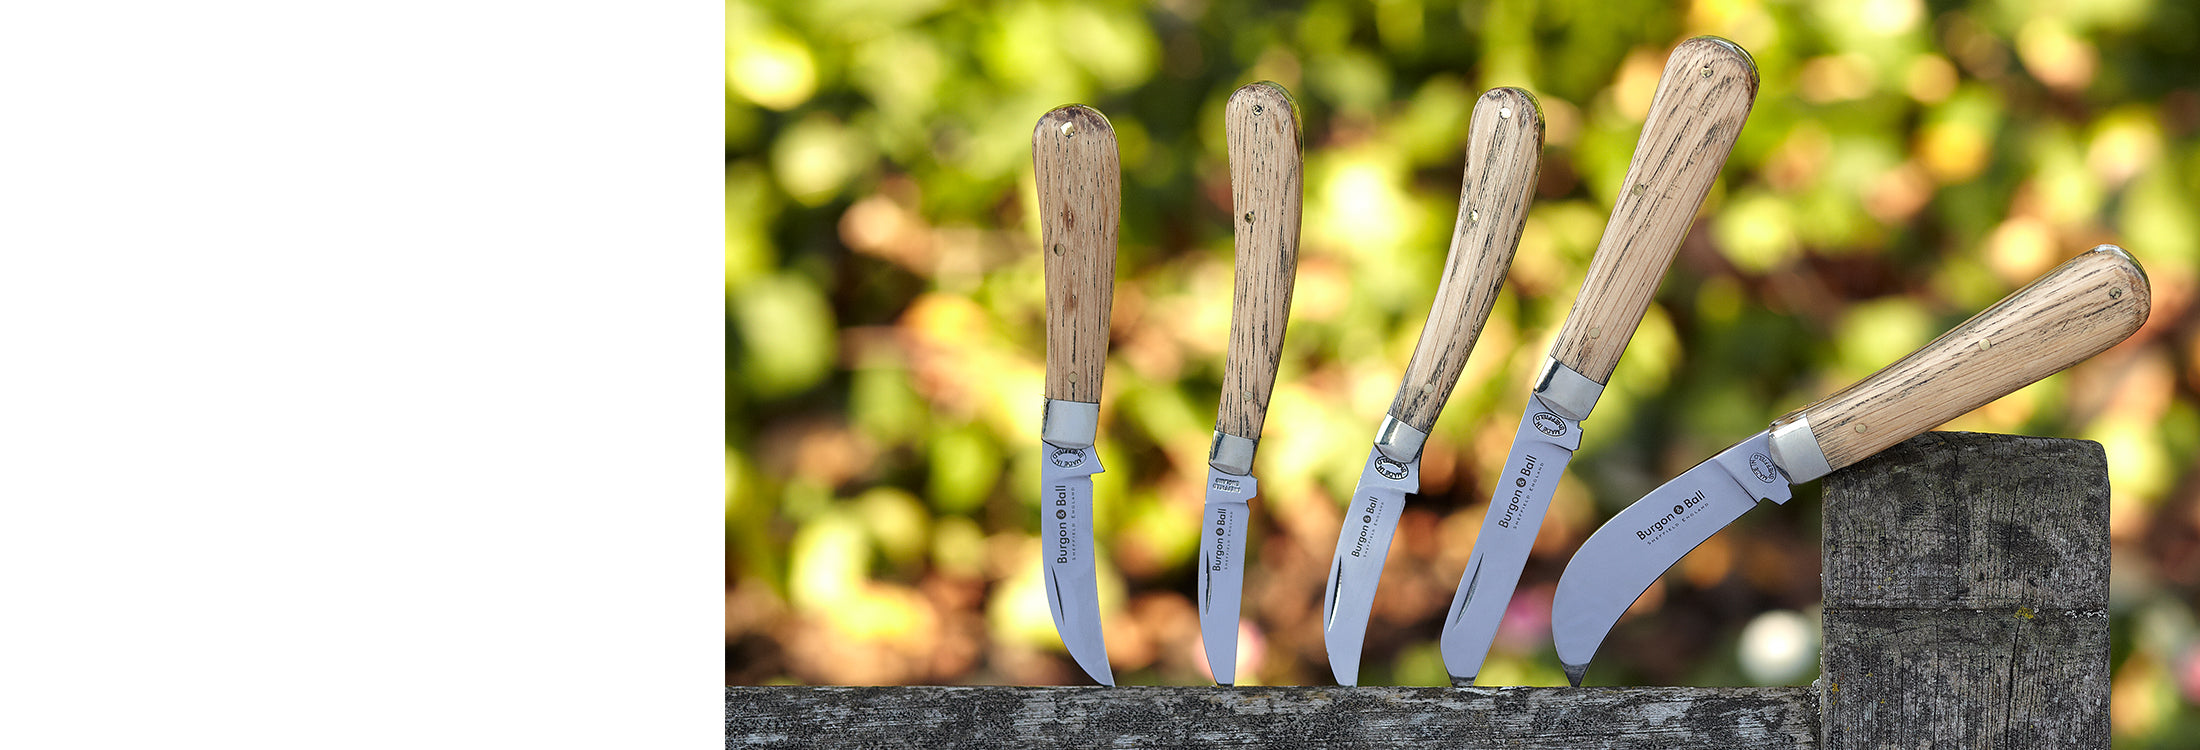 Trade Garden Knives